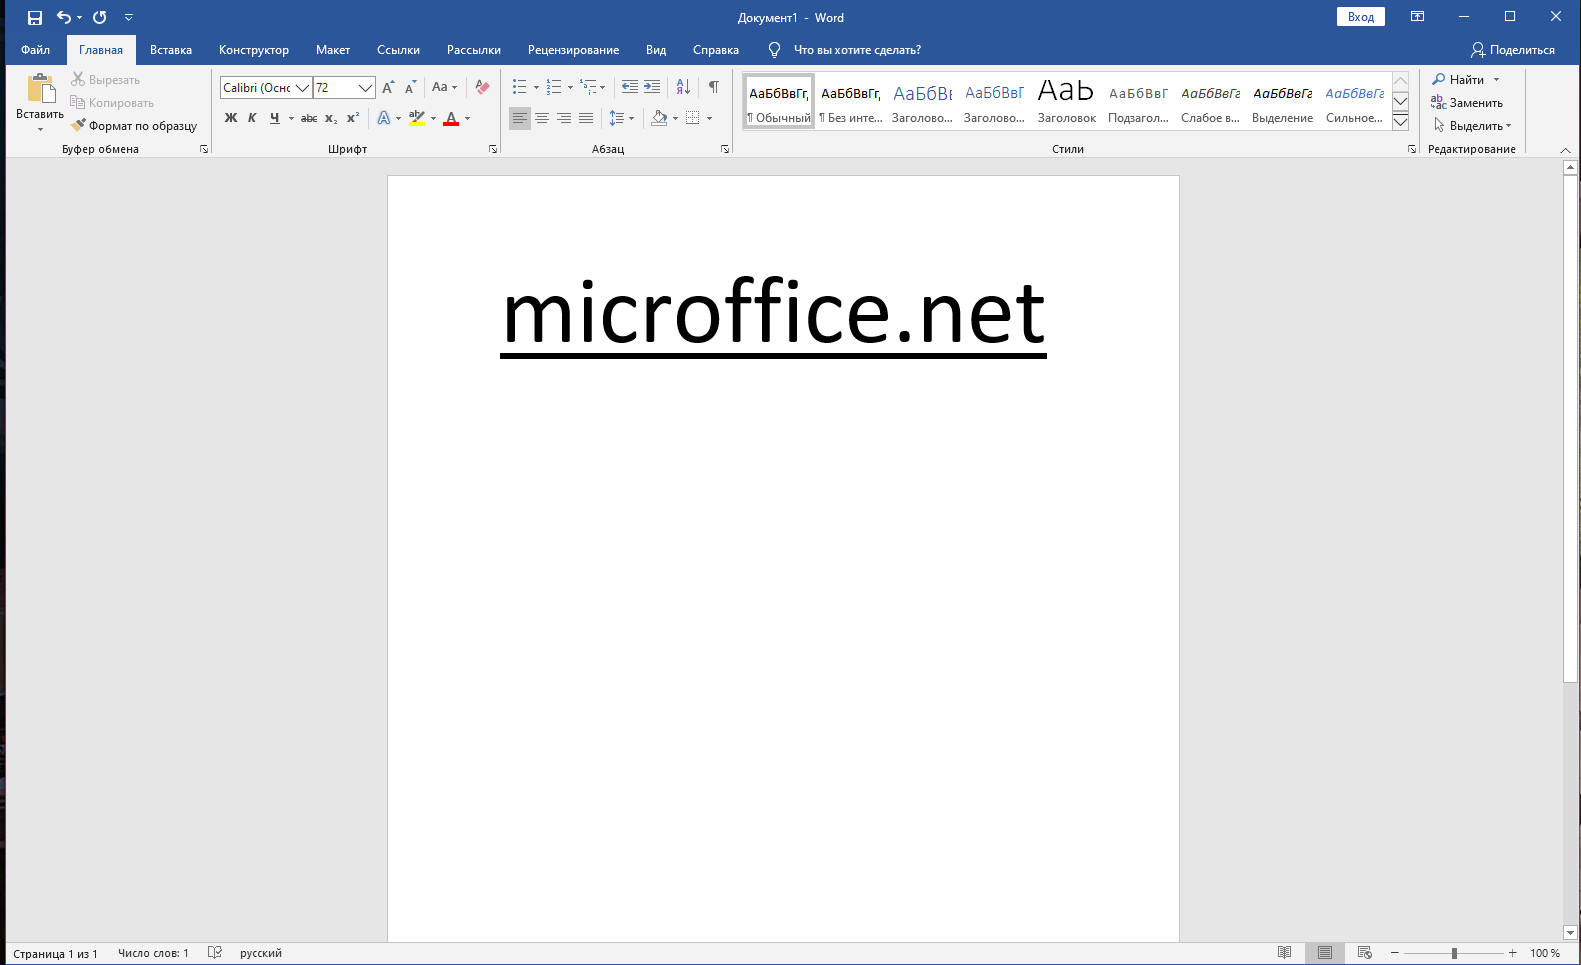 Ворд 2019 лицензионный. MS Word Интерфейс 2019. Майкрософт офис ворд 2019. Microsoft Office Word 2019 Интерфейс. MS Office 2019 Интерфейс Word.